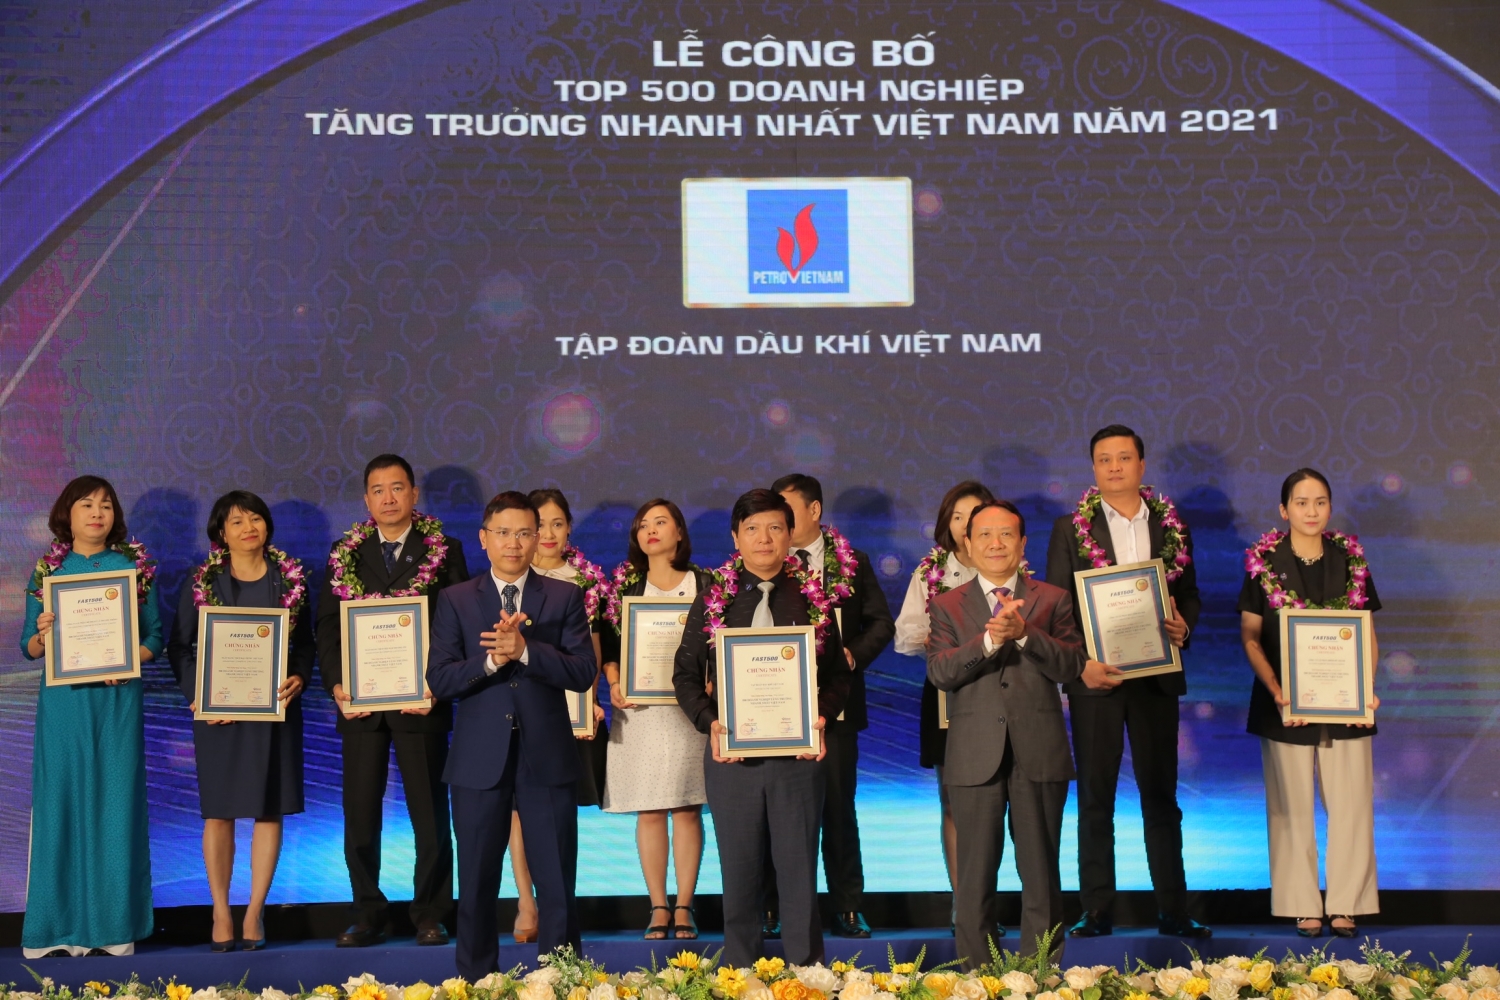 Petrovietnam nhận vinh danh Top 500 doanh nghiệp tăng trưởng nhanh nhất Việt Nam năm 2021